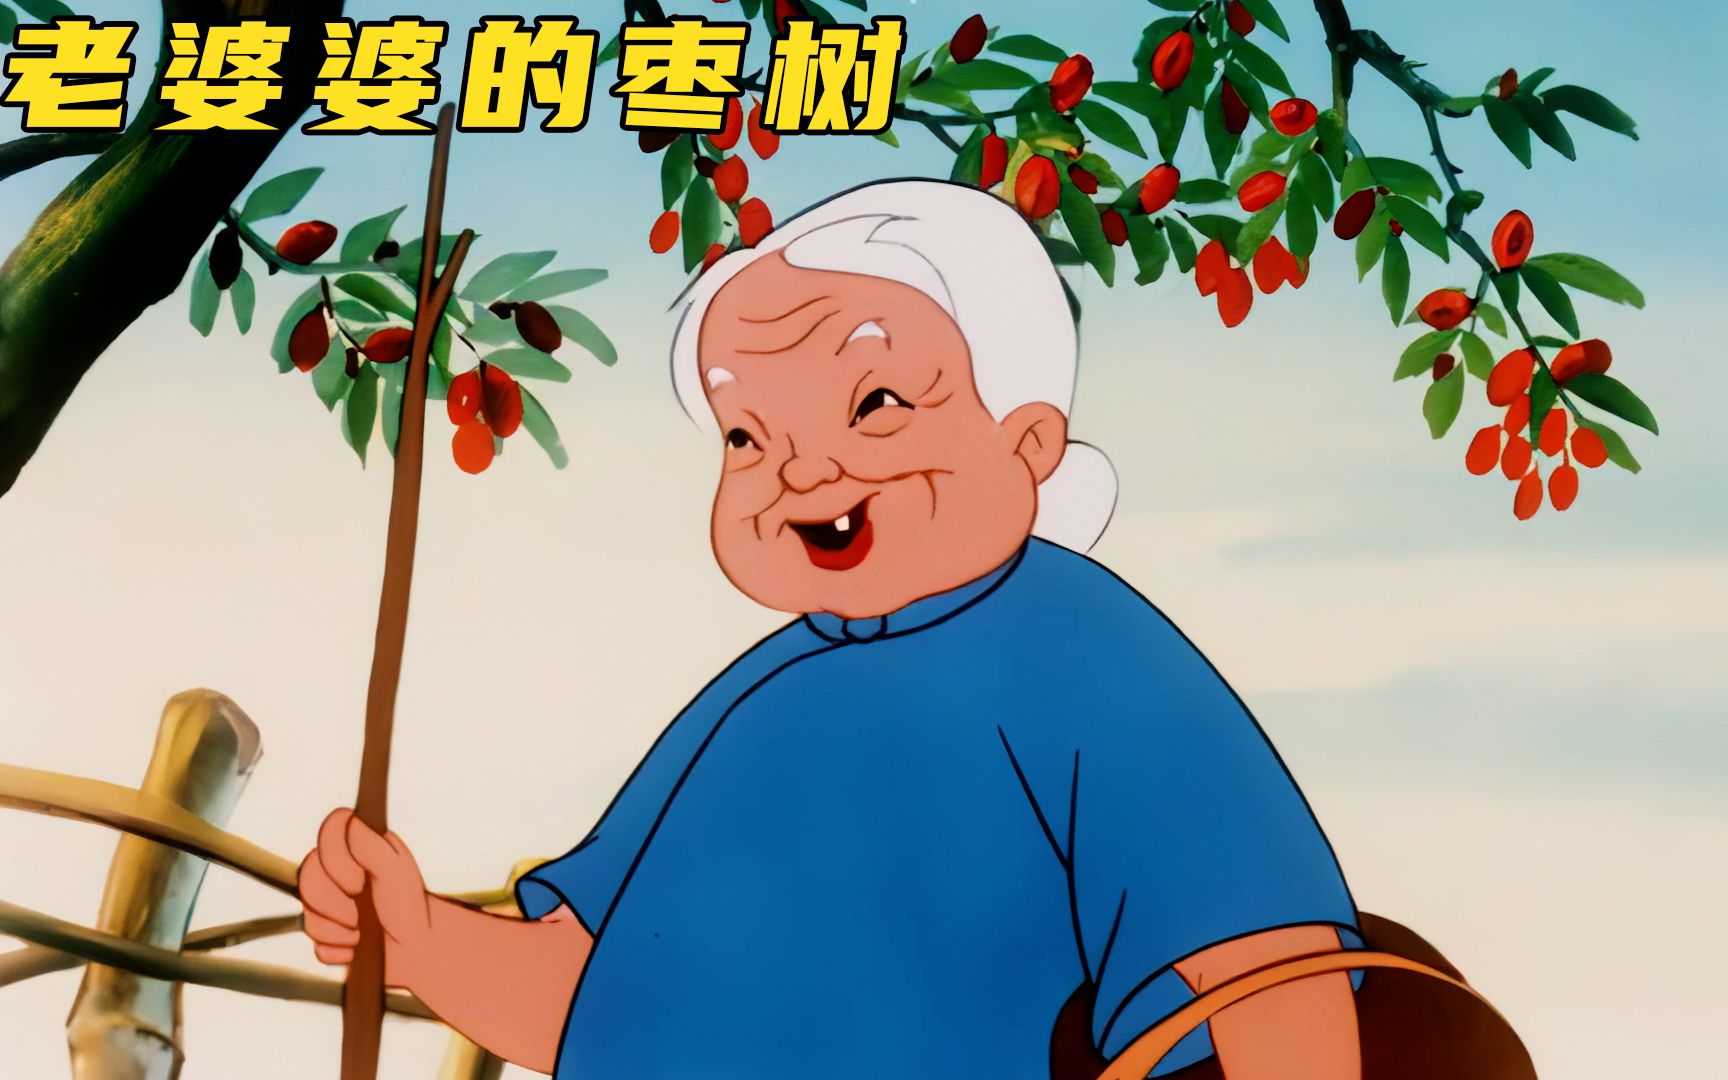 上美厂动画《老婆婆的枣树》:小刺猬捡来红枣,却被怀疑是偷来的